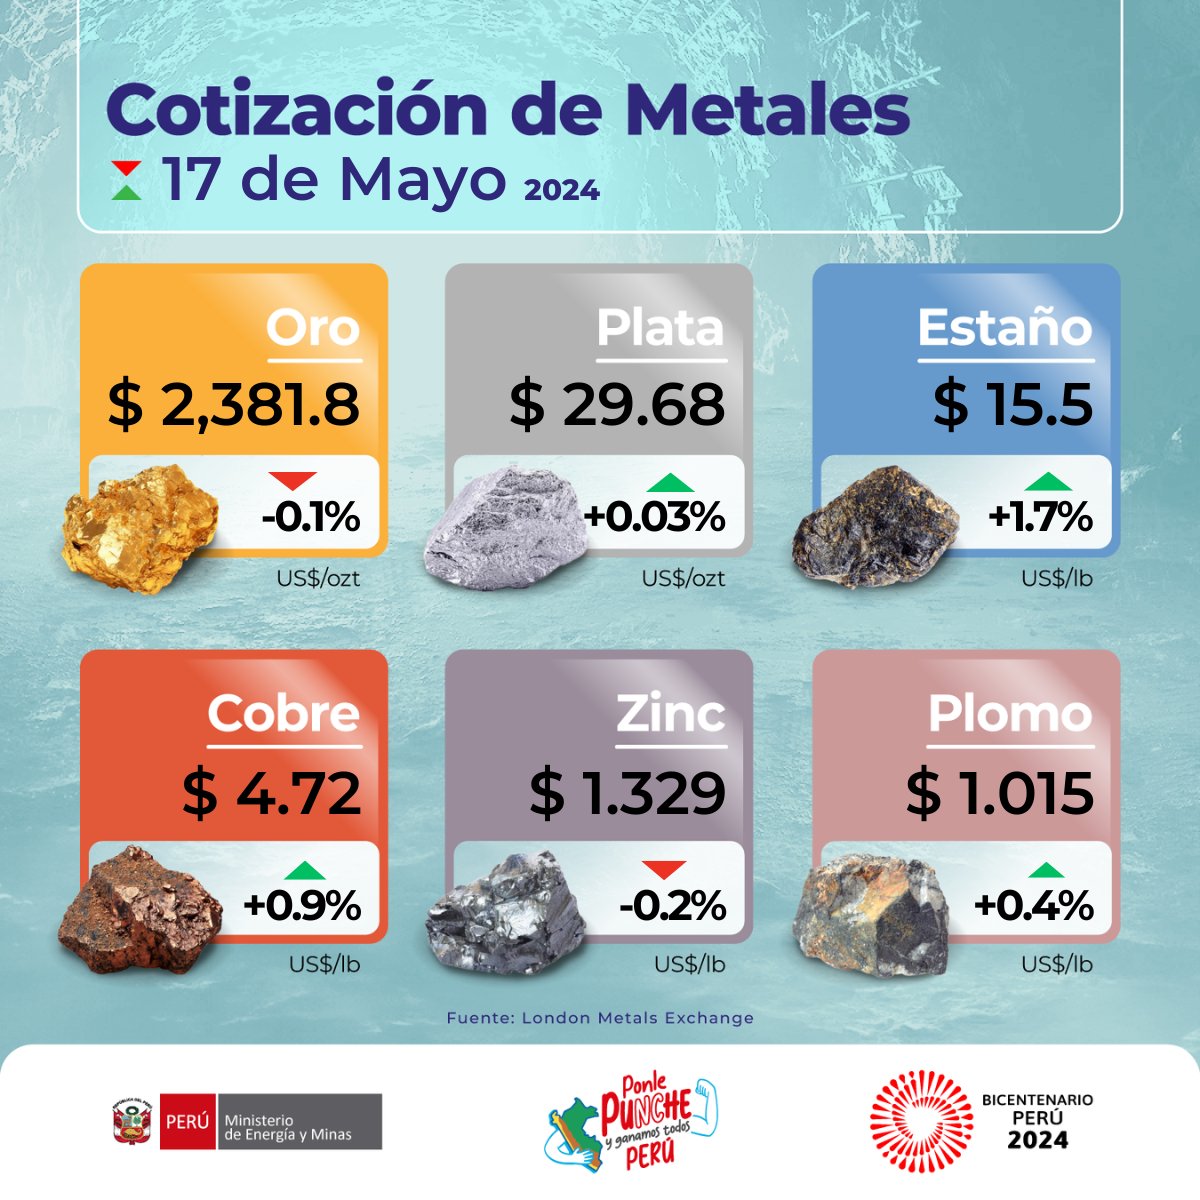 🪙 Conoce la cotización internacional de los metales más importantes en la economía peruana para hoy viernes 17 de mayo de 2024 y su variación respecto al día anterior. 🟡 ORO ⚪️ PLATA 🔵 ESTAÑO 🟠 COBRE ⚫ ZINC 🟤 PLOMO #CotizaciónDeMetales